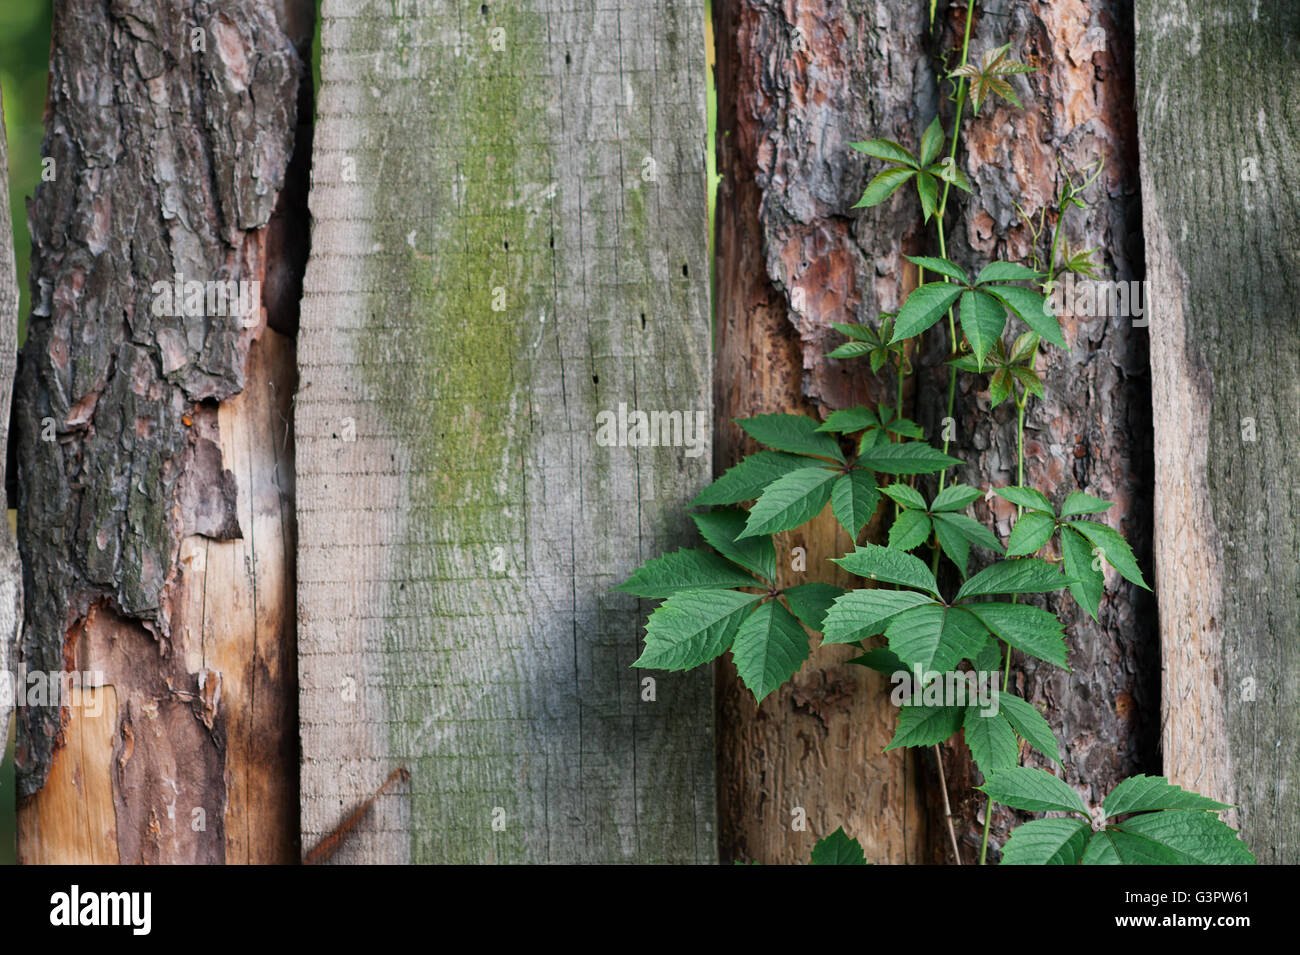 La texture della vecchia staccionata in legno con piante rampicanti Foto Stock